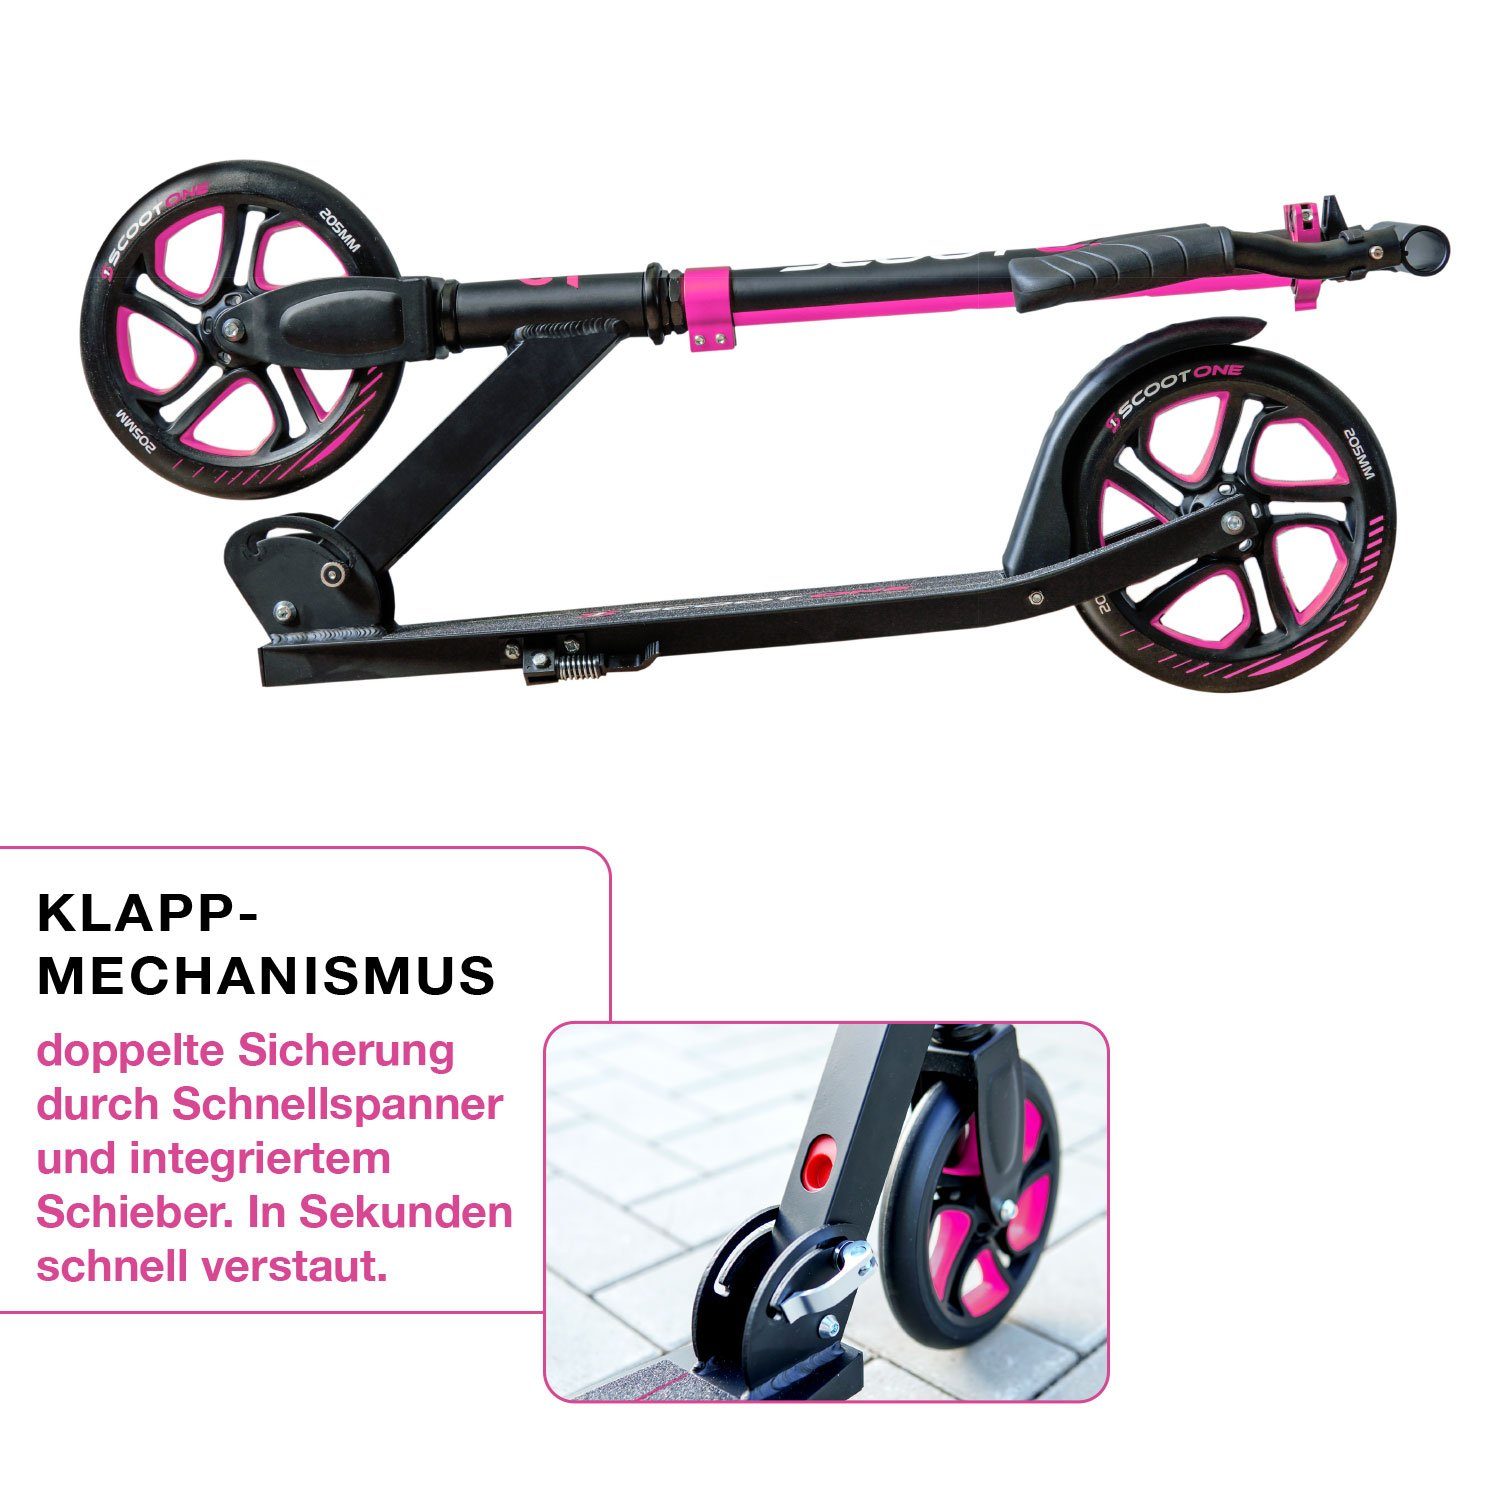 Aluminium Cityroller S2, Tretroller Höhenverstellbarer klappbar 205mm Scoot Roller, Kickroller One pink –